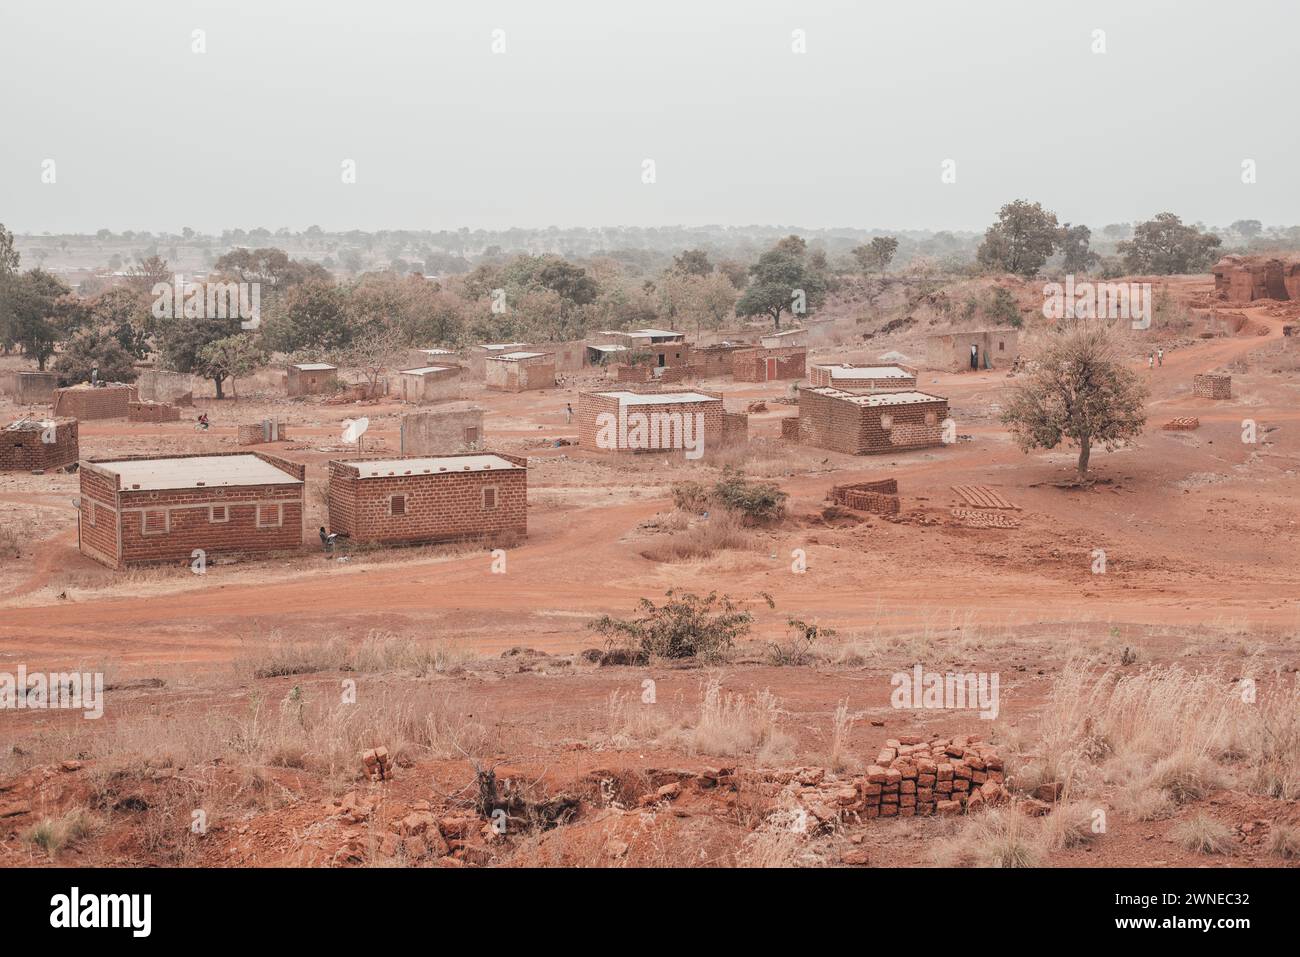 Ouagadougou, Burkina Faso. December 2017. Typical agricultural village near the capital Stock Photo